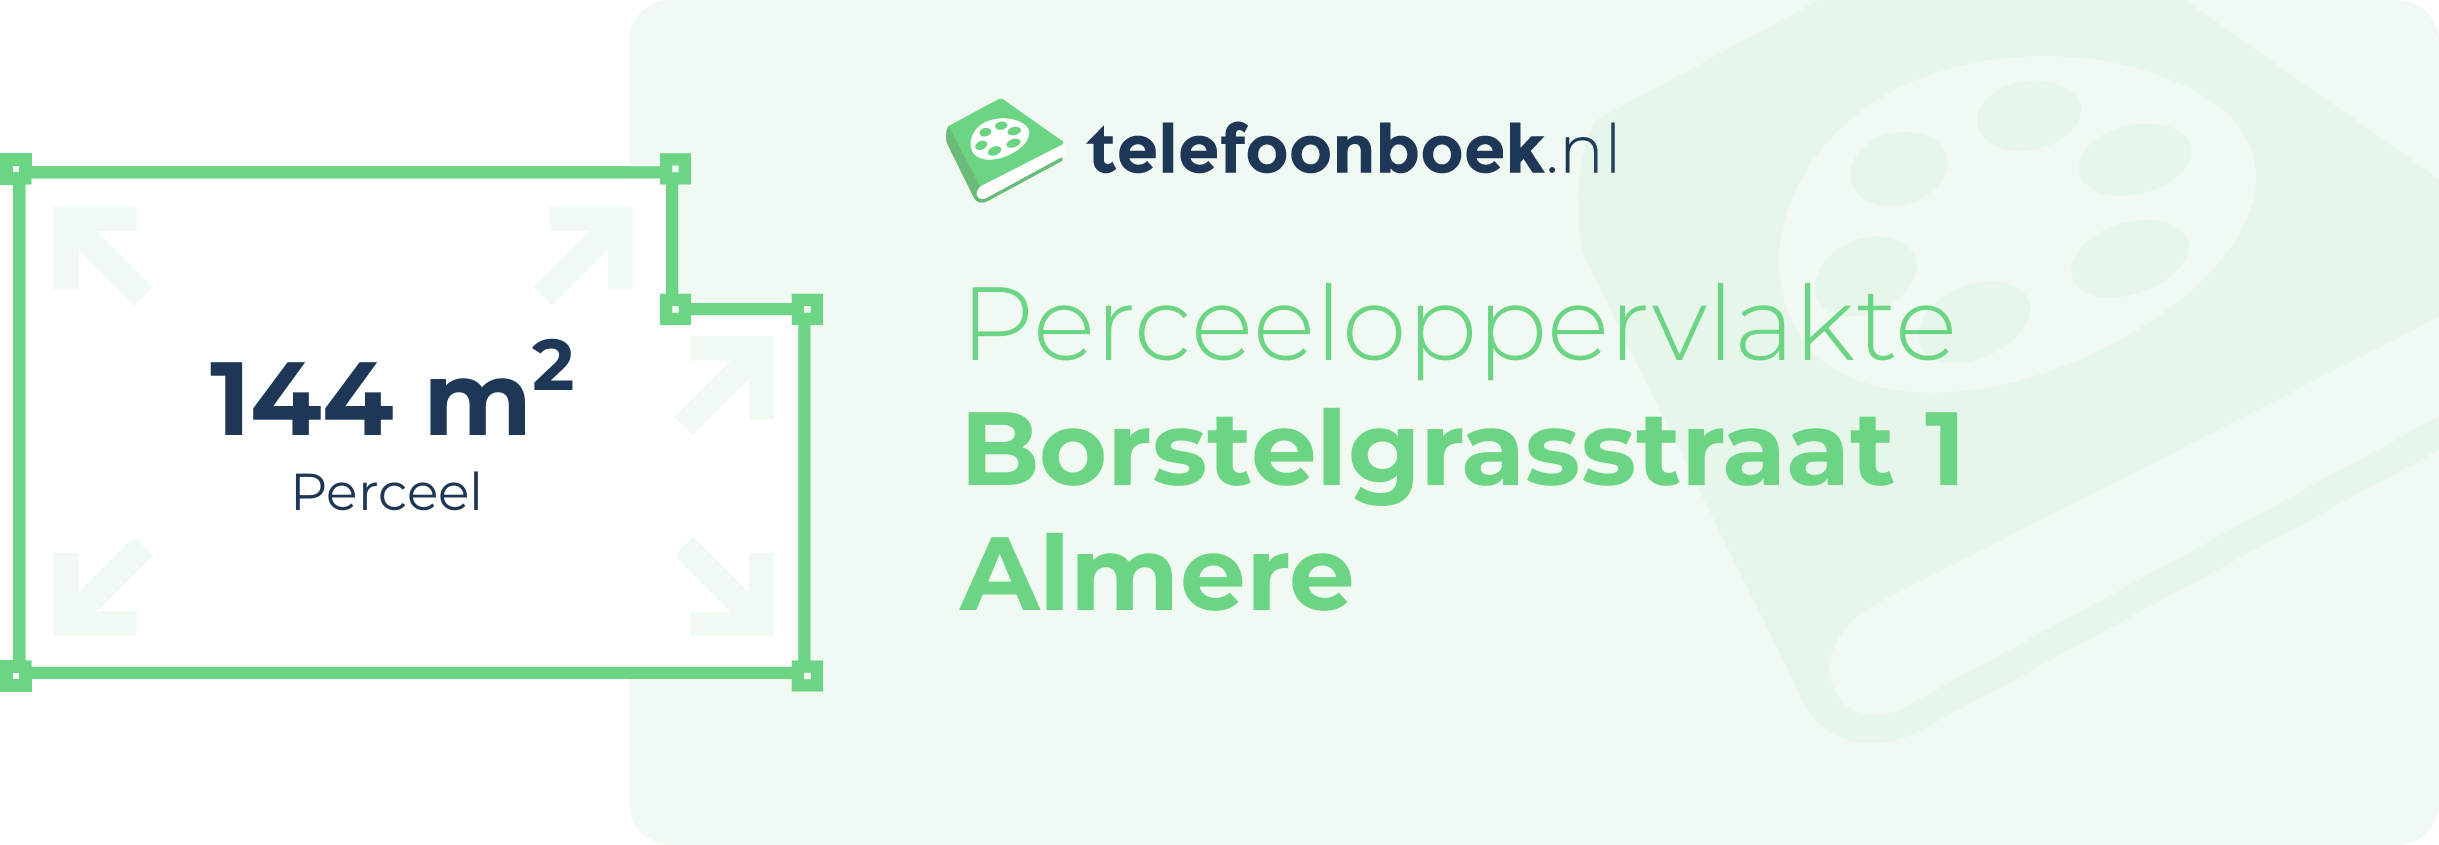 Perceeloppervlakte Borstelgrasstraat 1 Almere